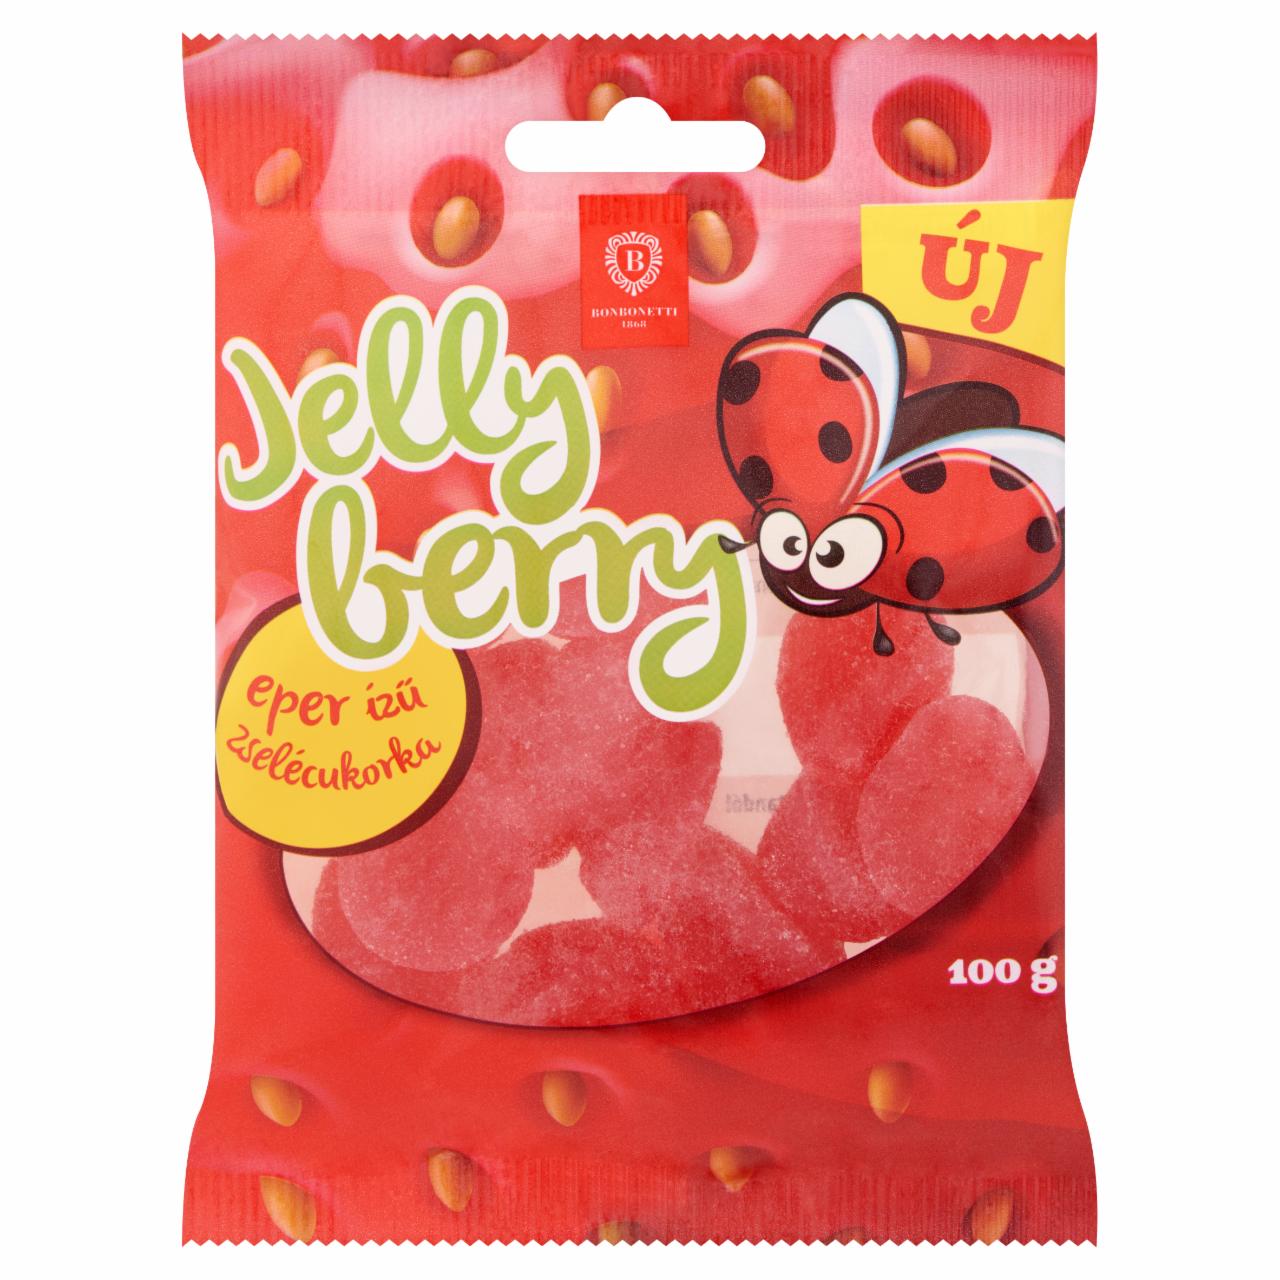 Képek - Bonbonetti Jelly Berry eper ízű zselécukorka 100 g